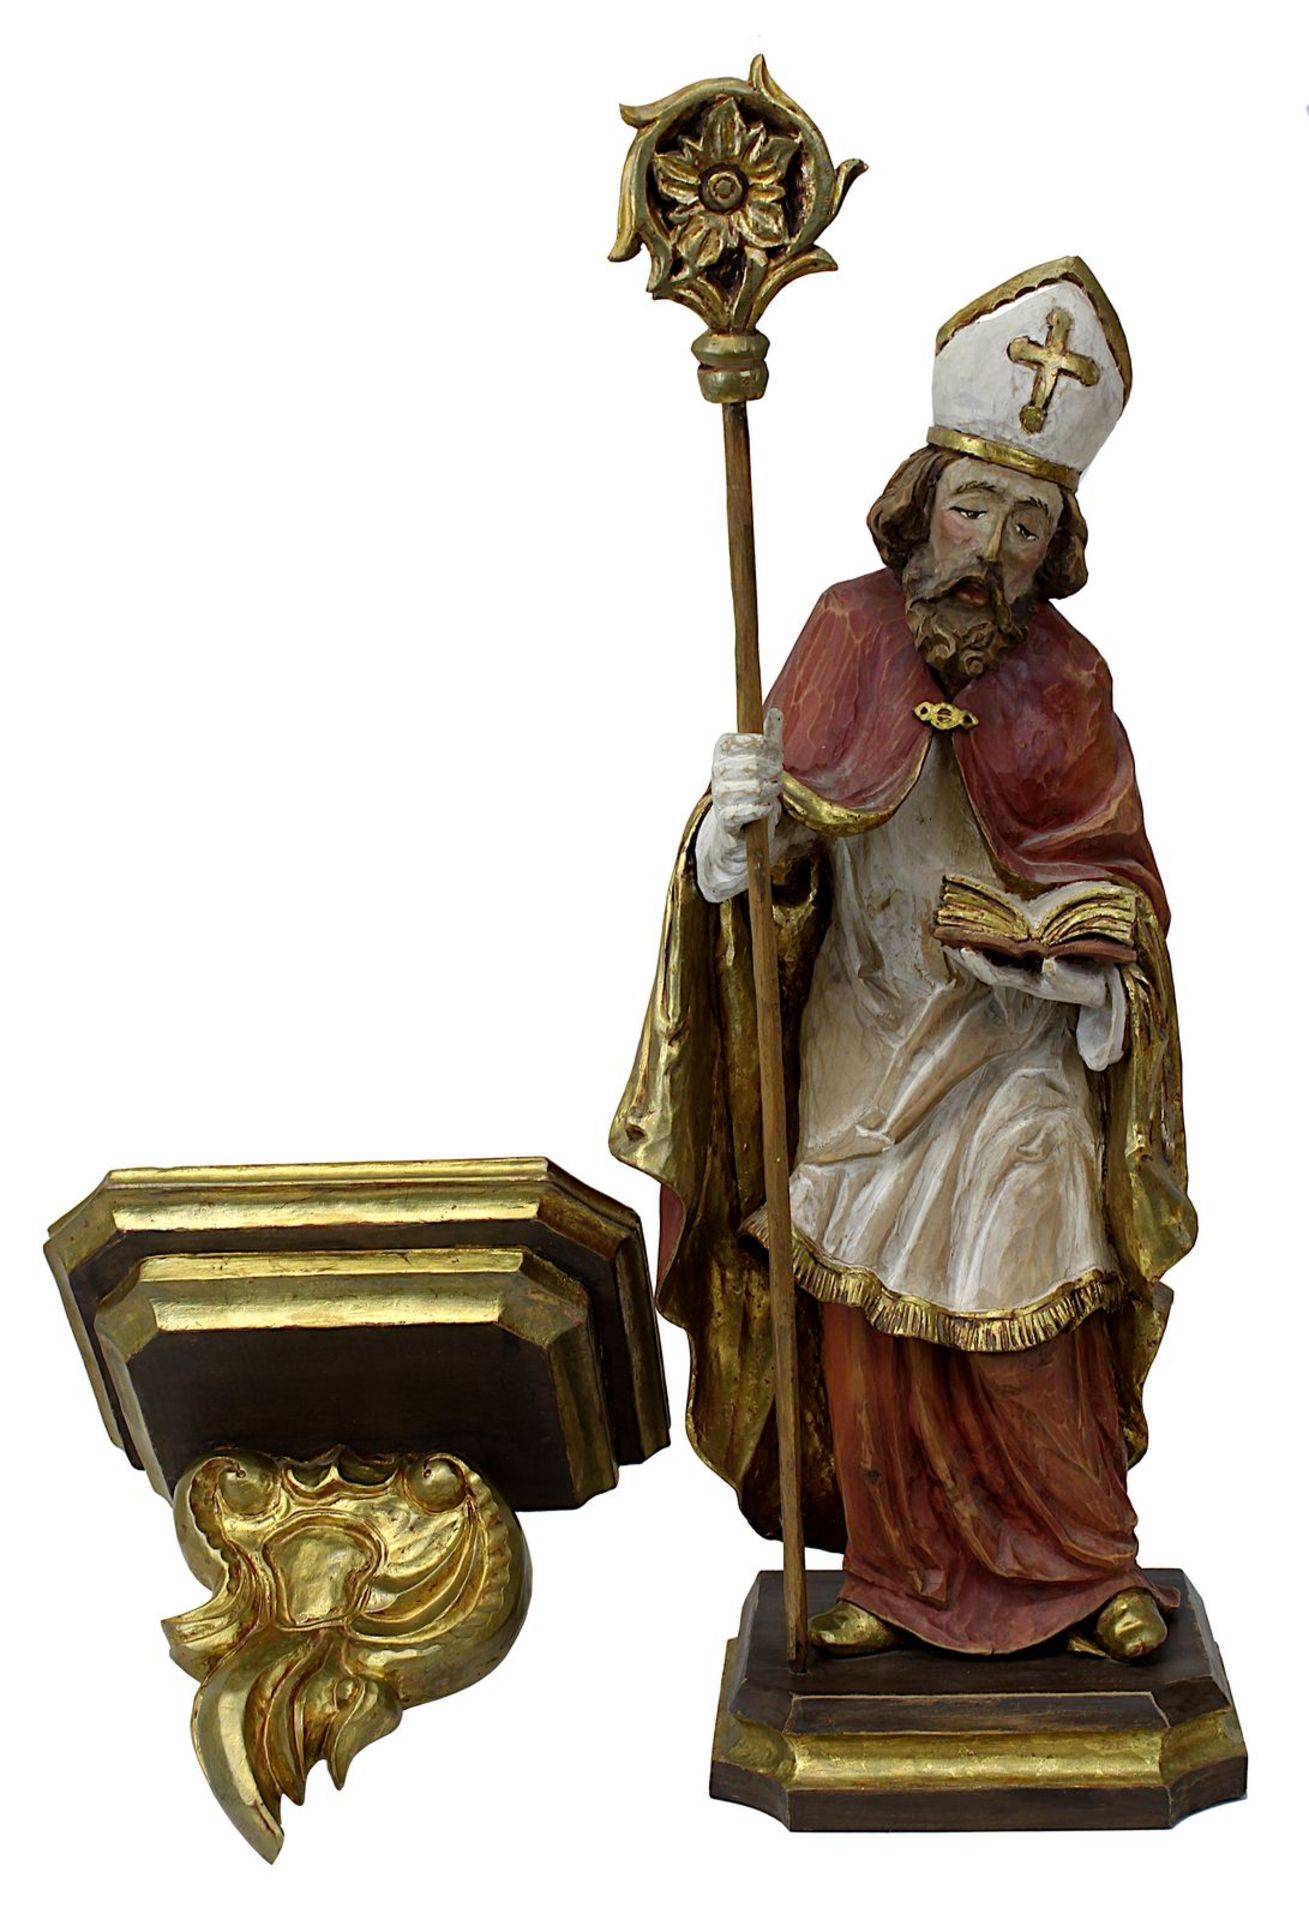 Heiliger Bischof, wohl Hl. Nikolaus, 2. H. 20. Jh., Holz vollrund geschnitzt u. farbig gefasst, im